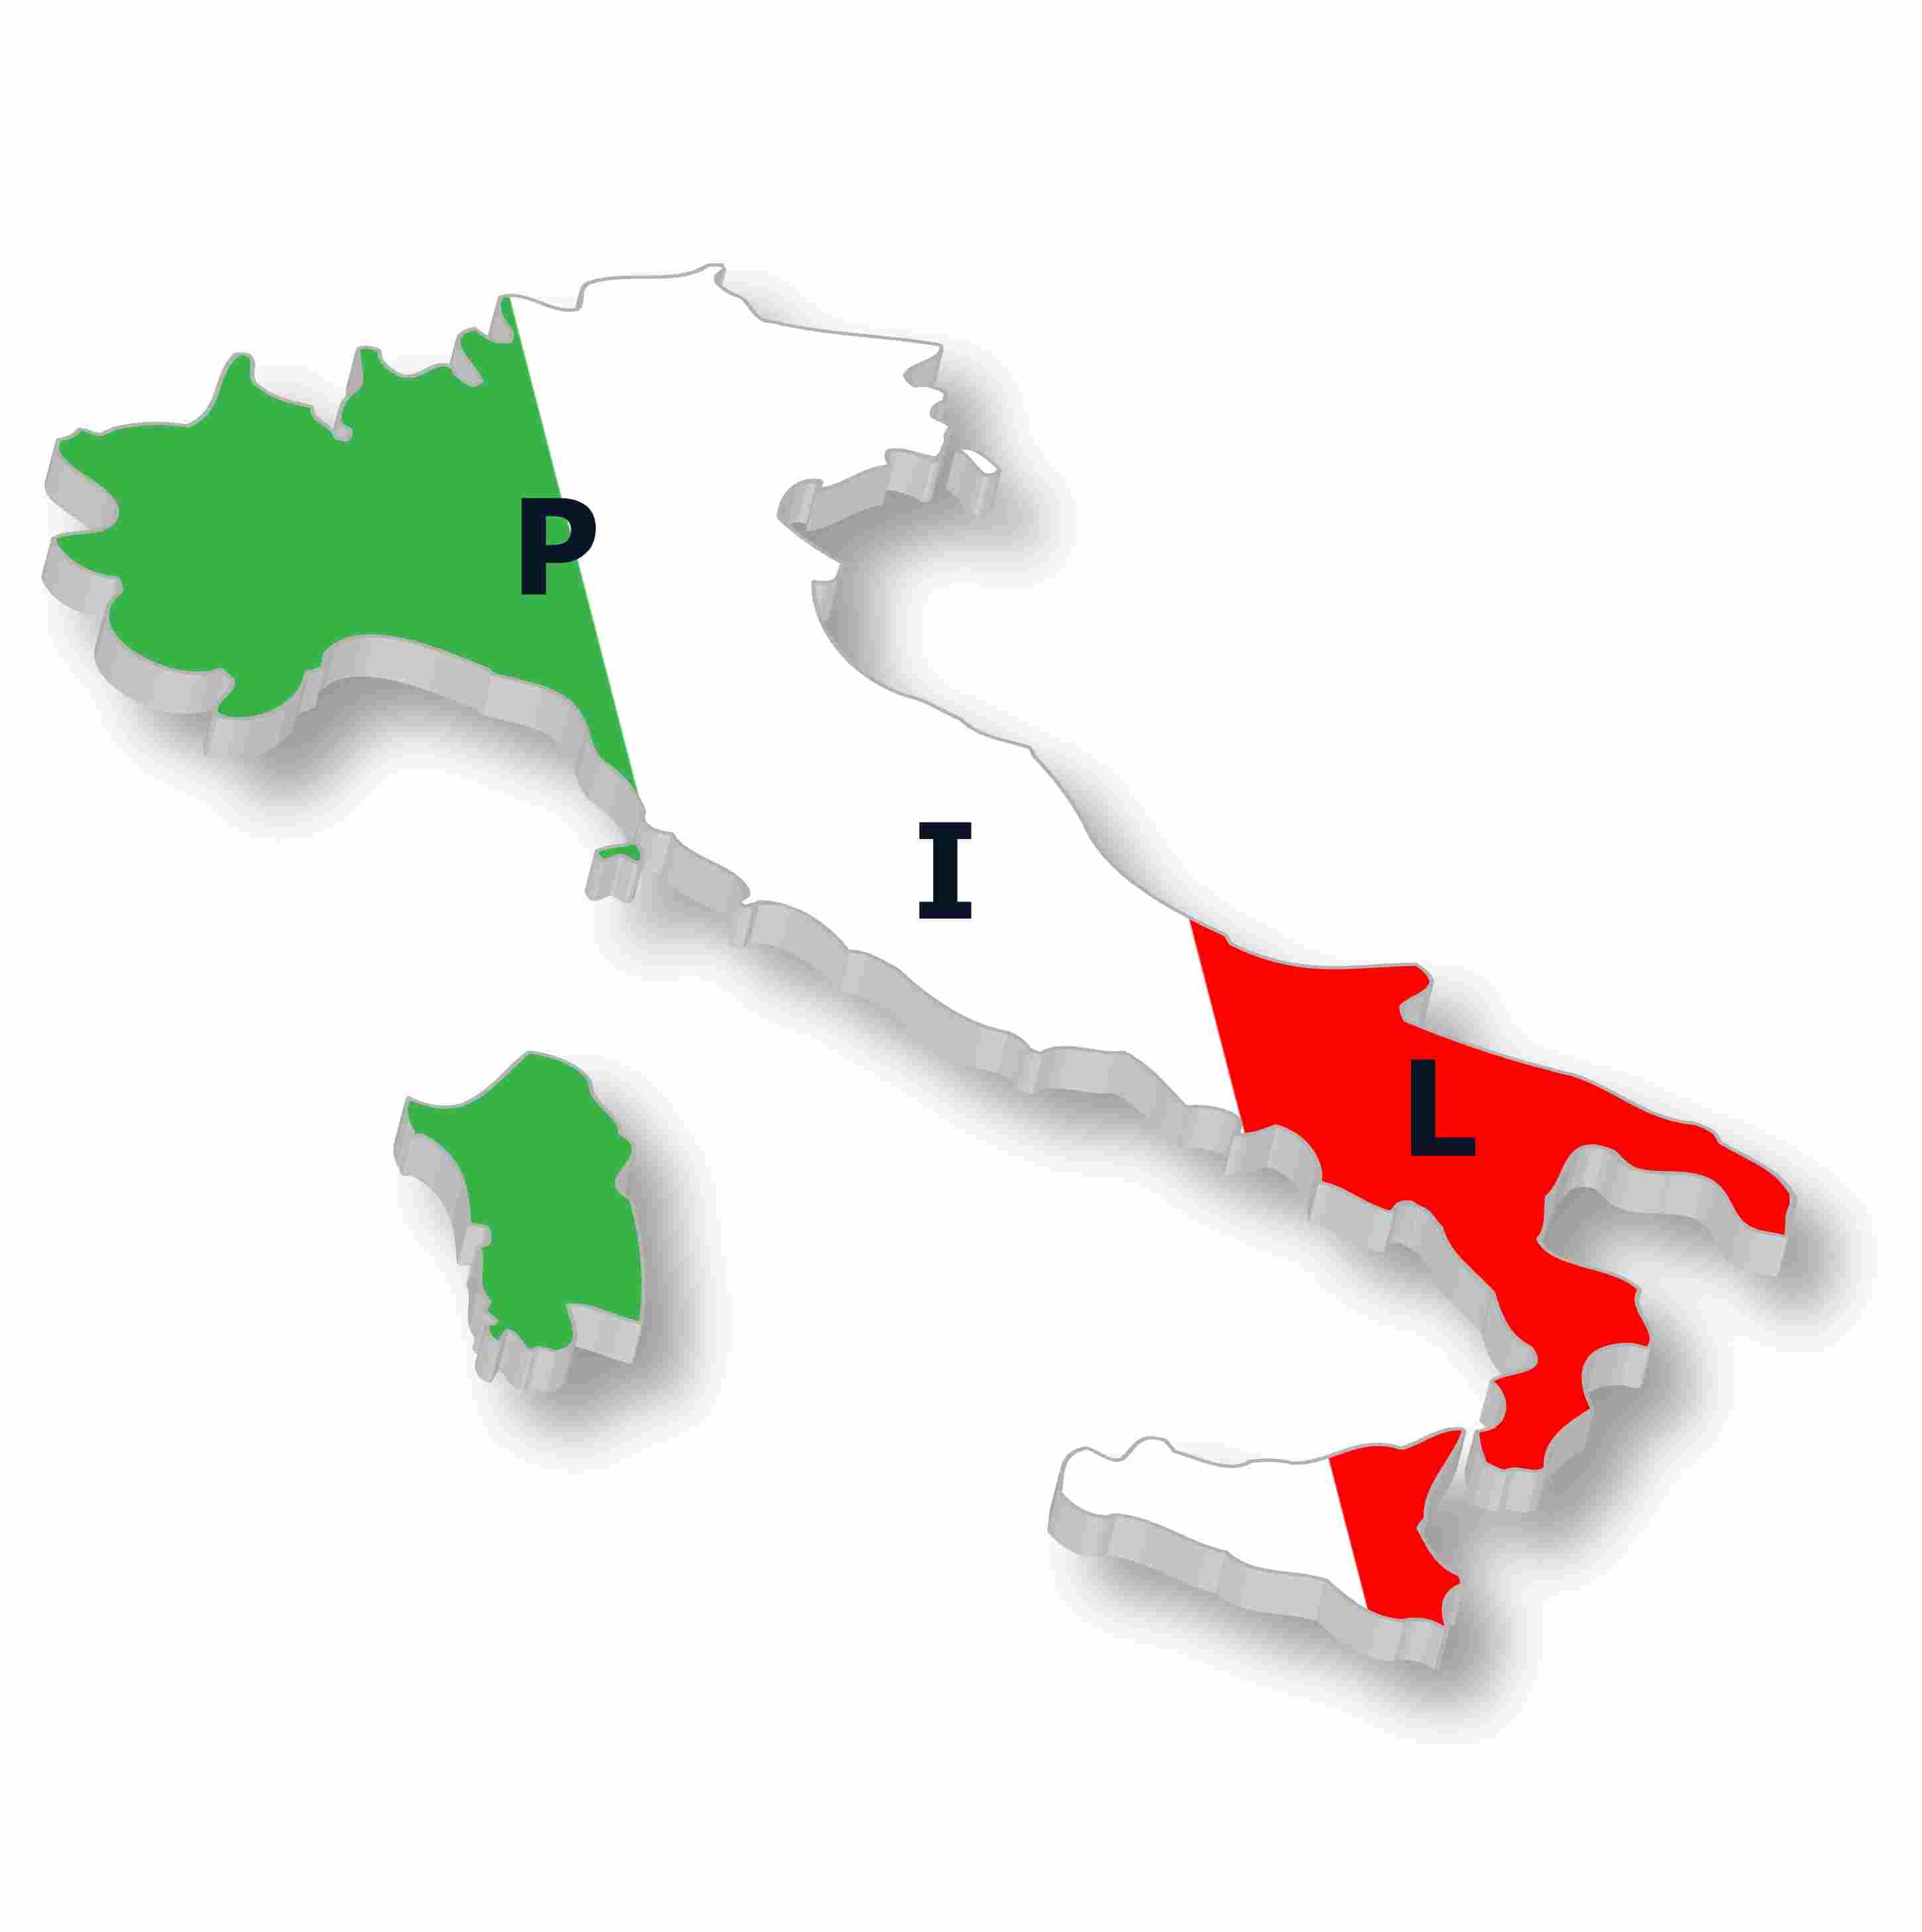 COVID: Coldieretti 1 italiano su 4 in Zona Rossa (27%). In Lombardia, Piemonte, Calabria e Val D'Aosta si produce 1/3 del PIL